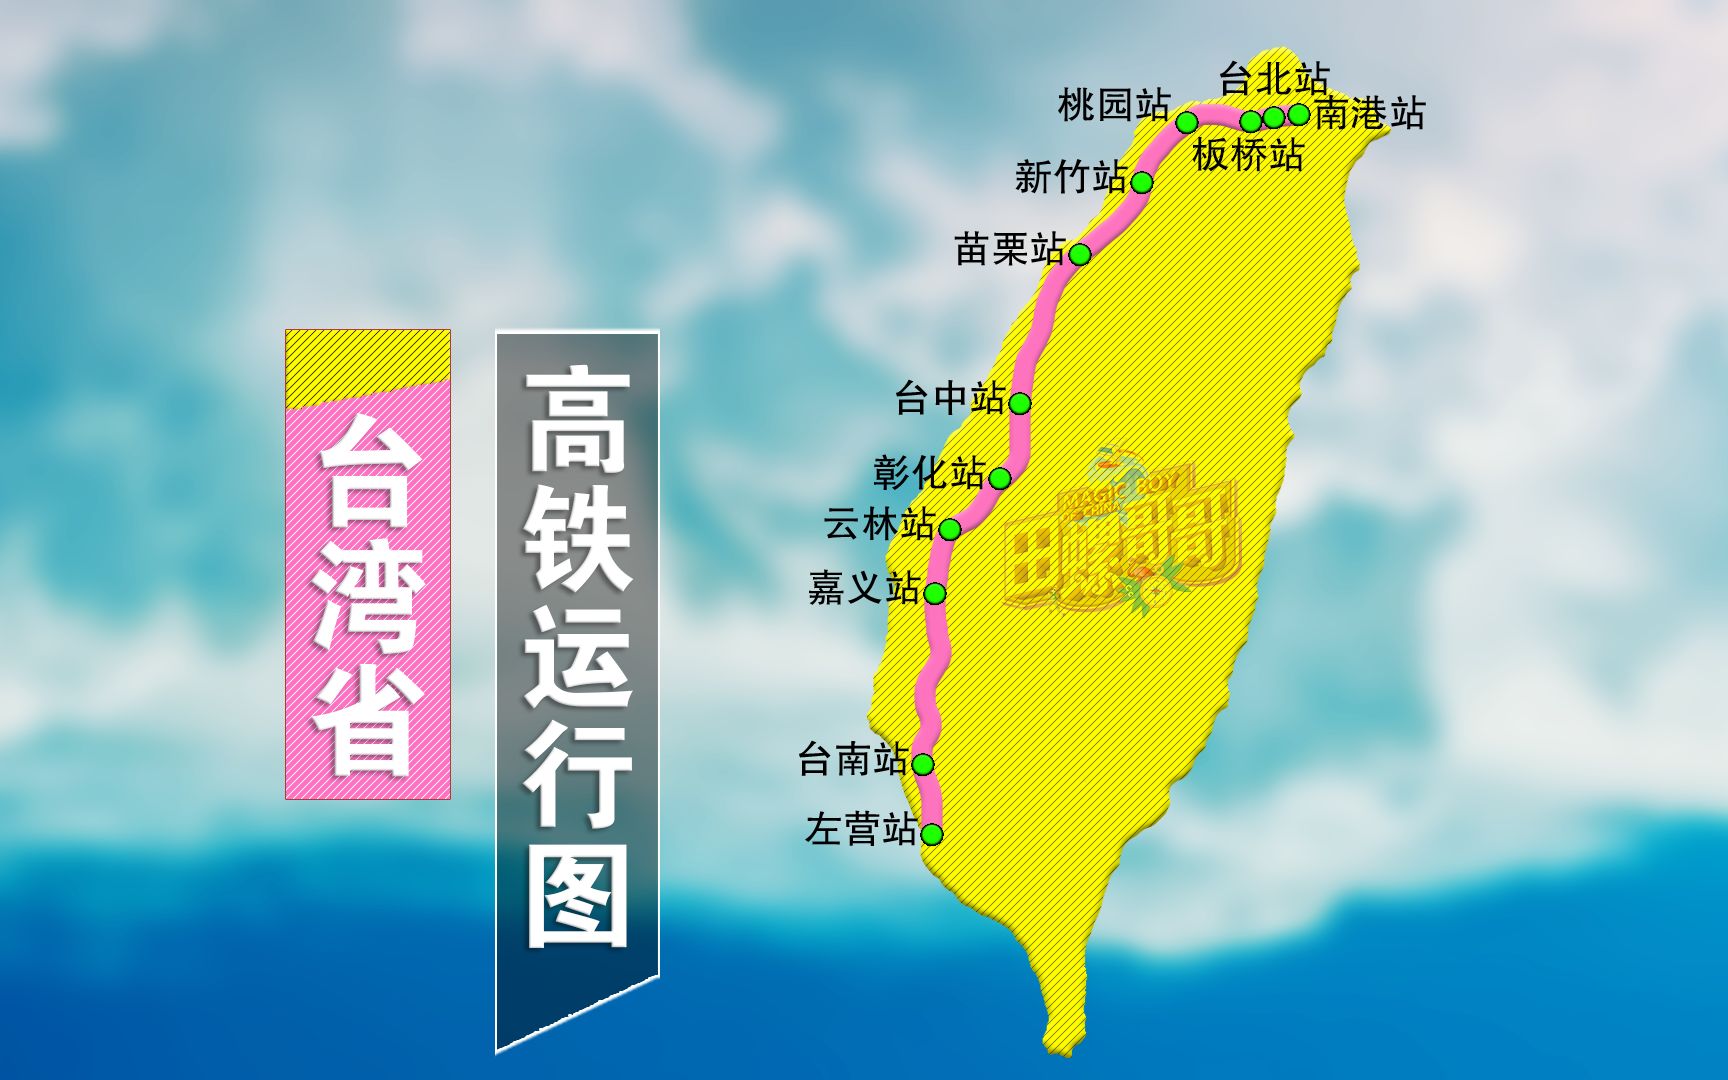 活动  台湾省的高铁运行图,全省只有一条,一共12个高铁站!